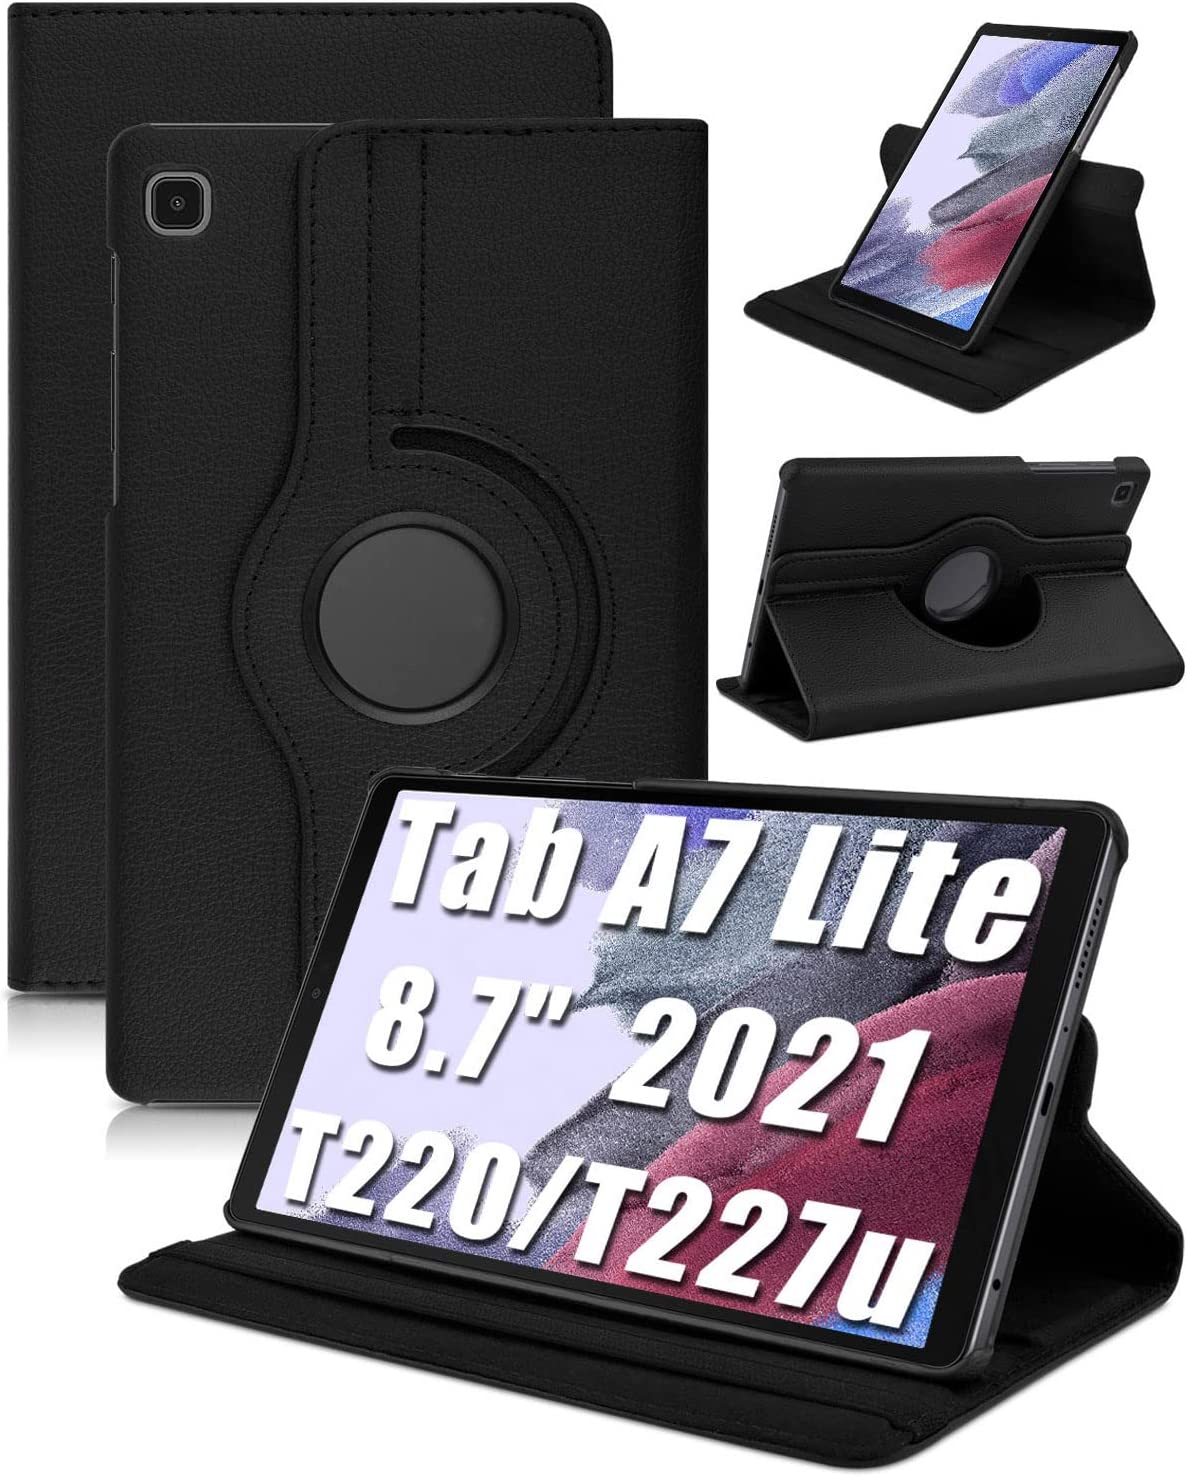 Funda Case para Tablet Samsung TAB A7 Lite 8.7" SM-T220 Giratorio con Soporte